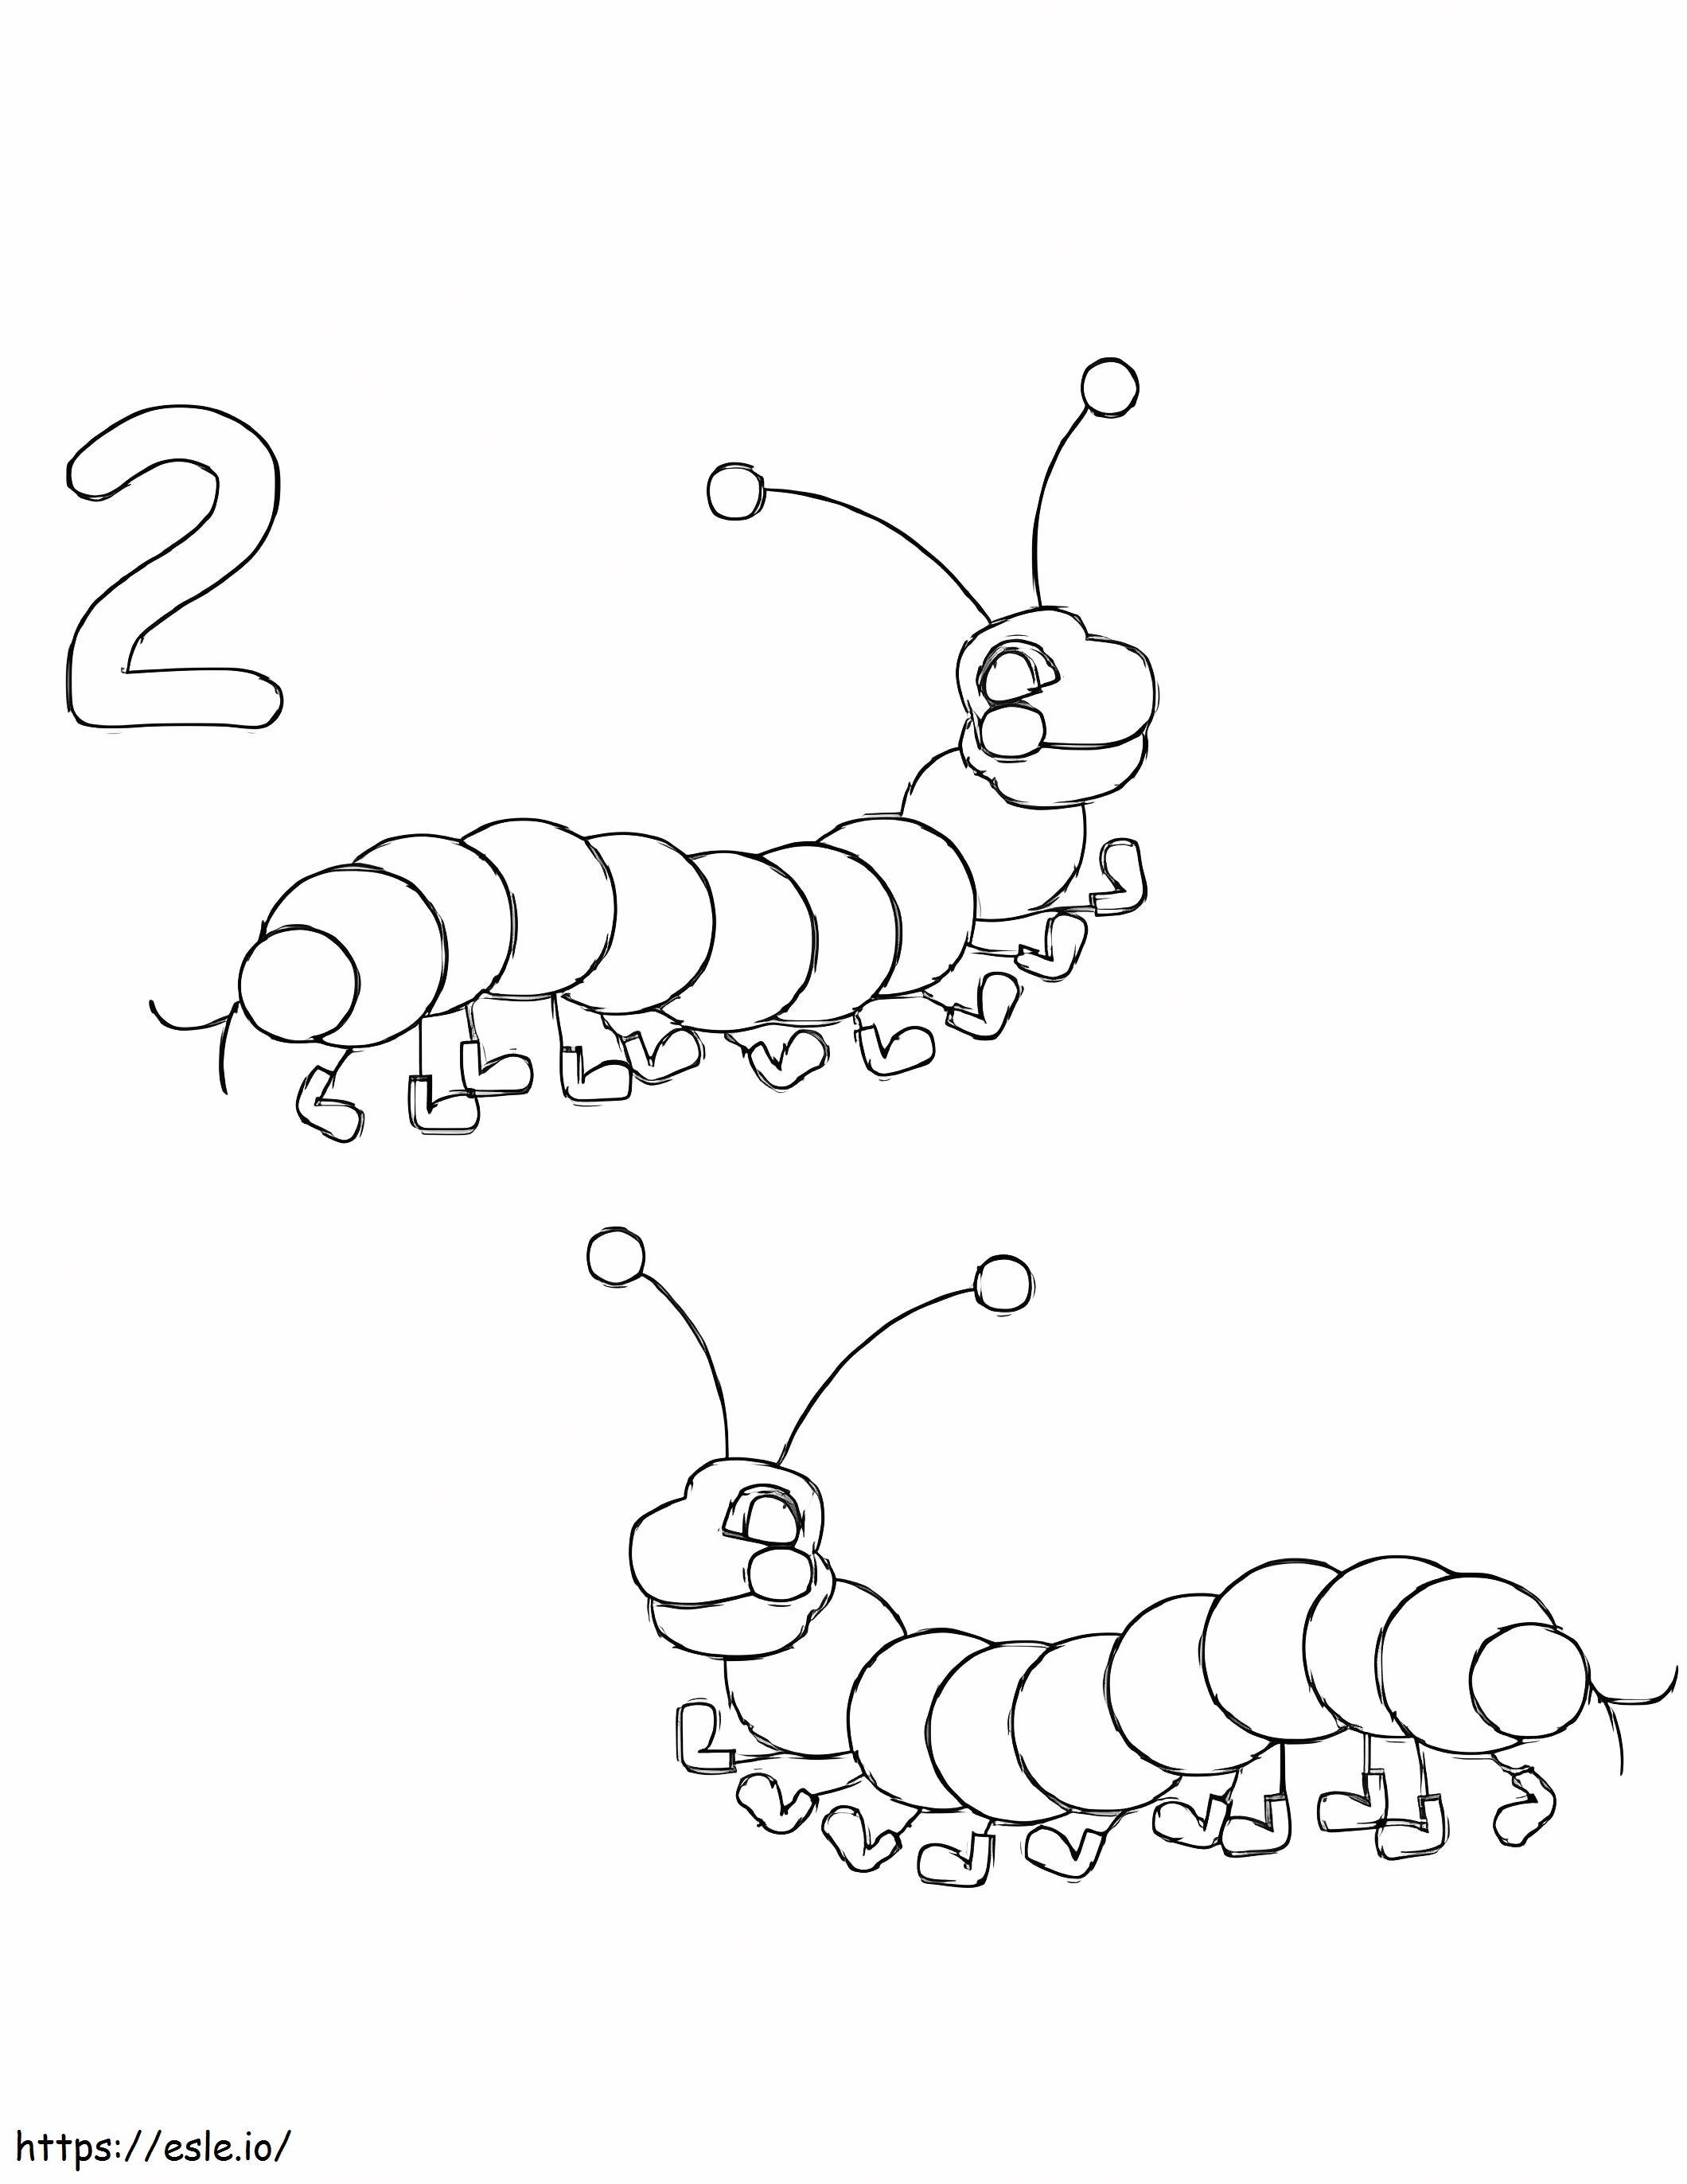 Número 2 e dois vermes para colorir